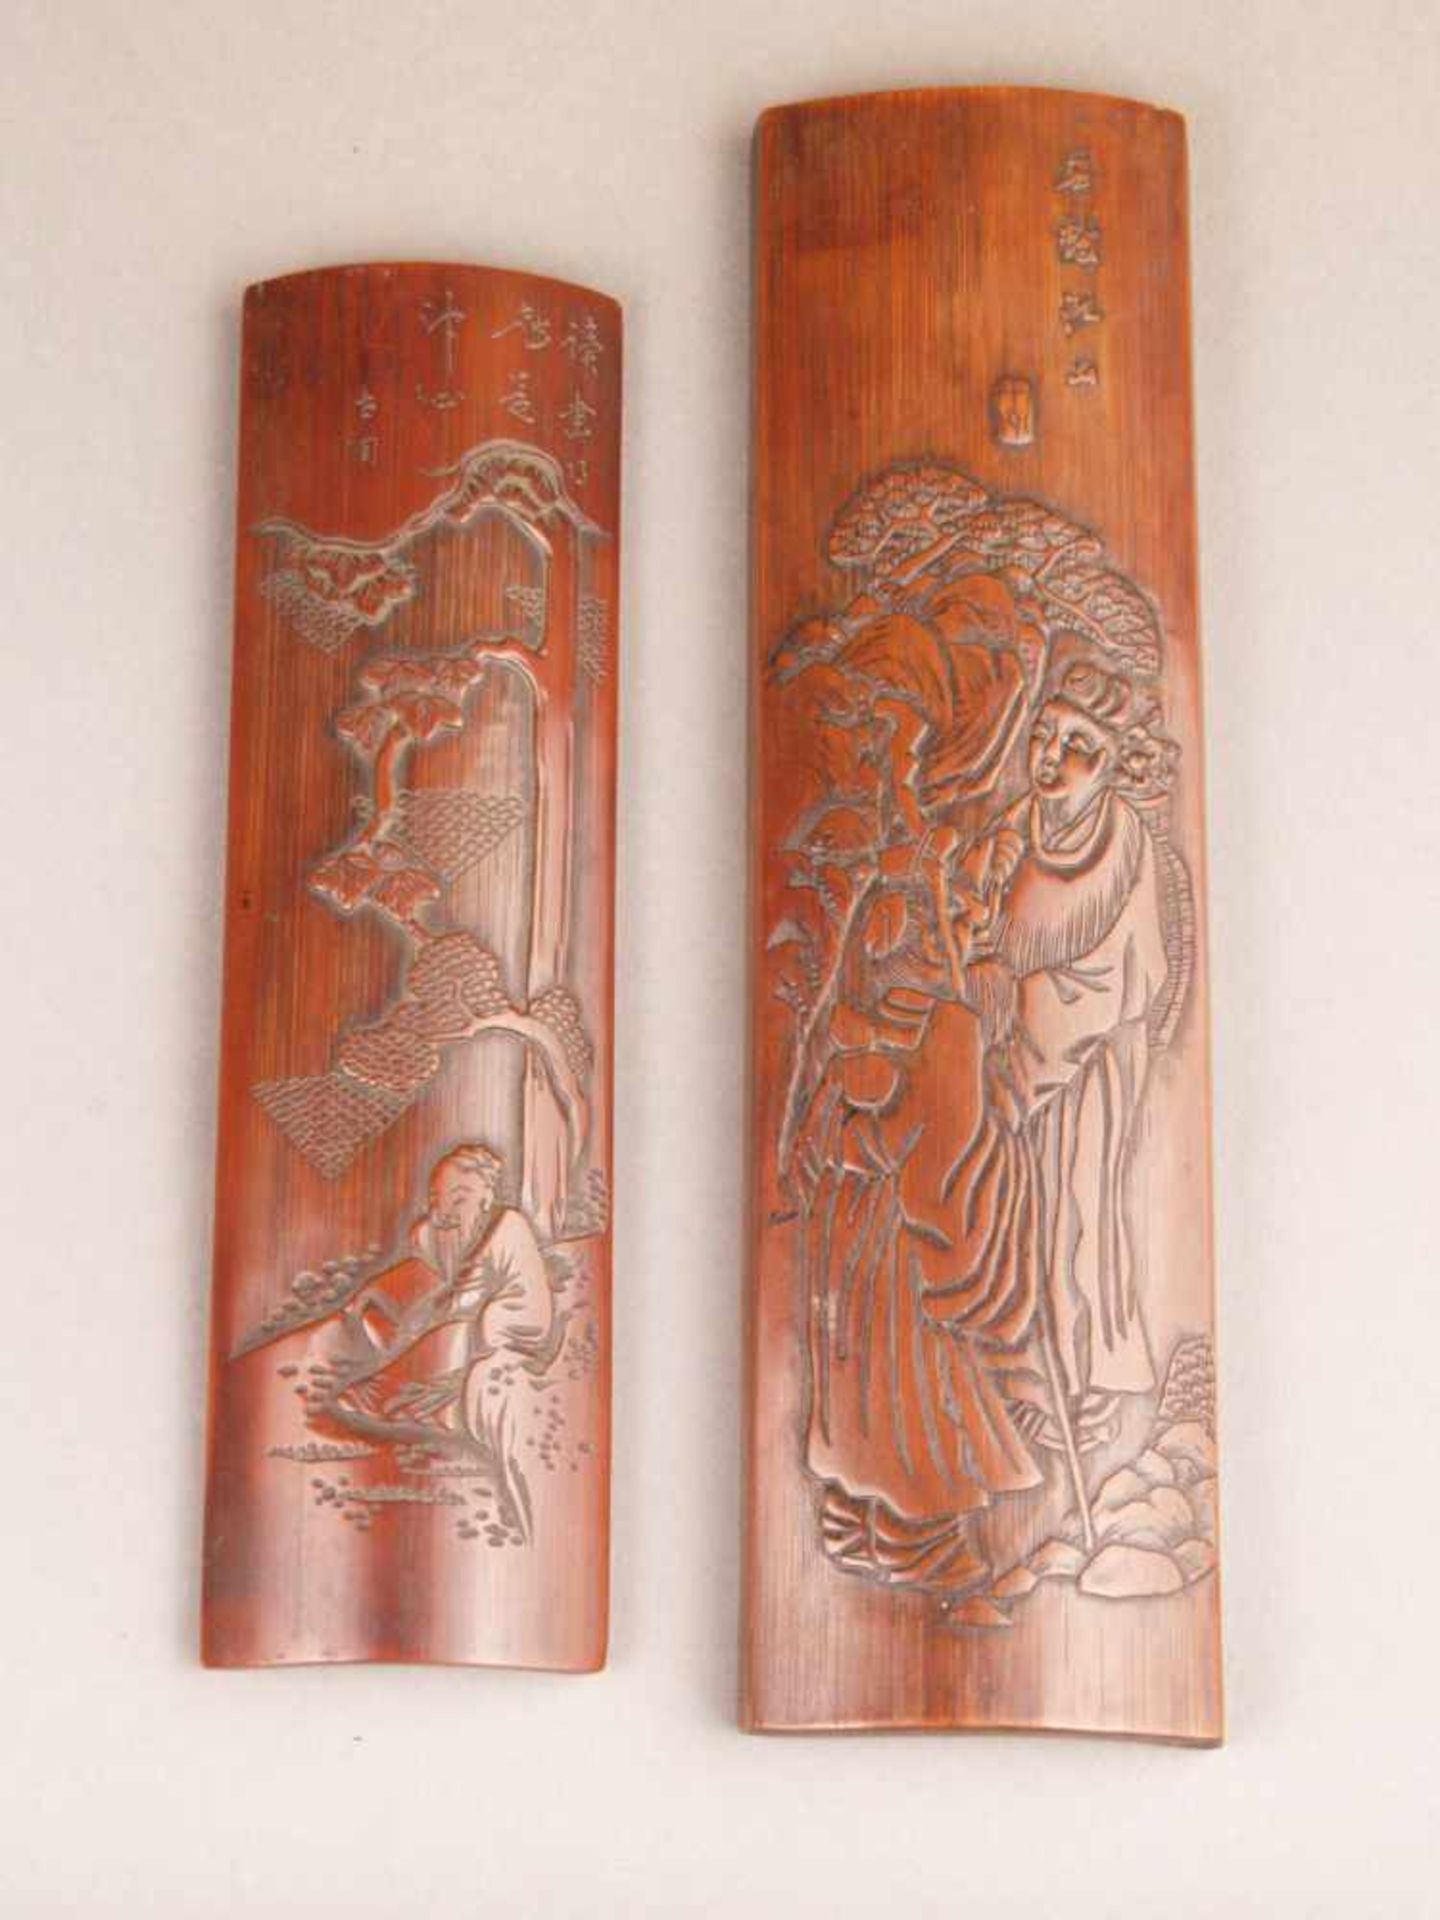 Zwei Handstützen - China, Qing-Dynastie, 18./19.Jh., konvexe längliche Form, Bambusholz fein